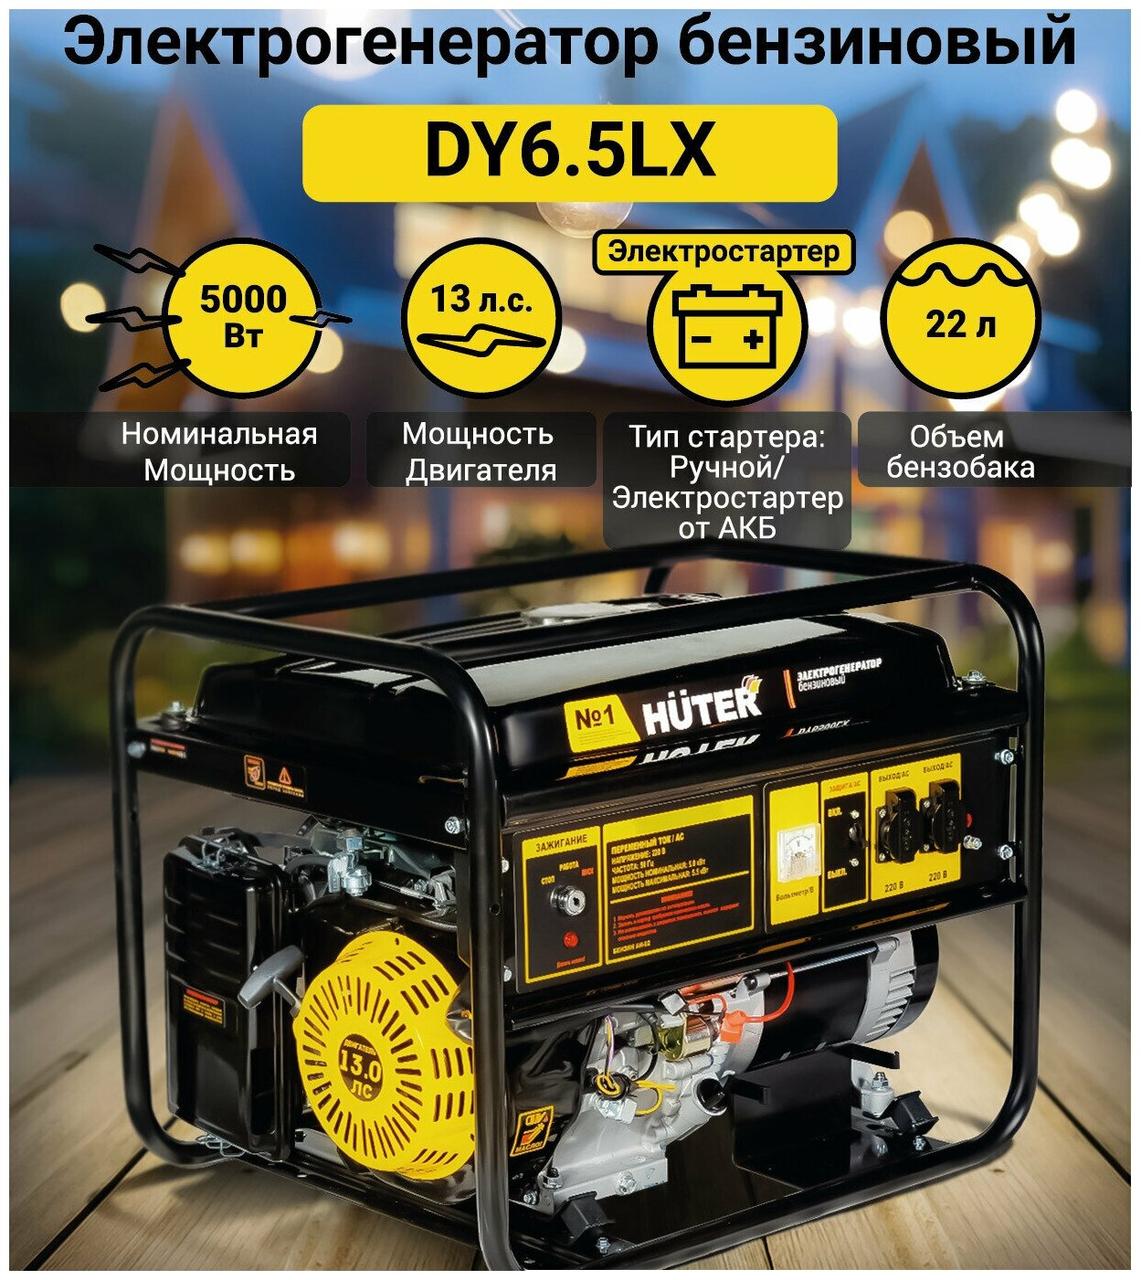 Электрогенератор Huter DY6,5LX 64/1/75 (5.5 кВт, 220 В, ручной/электро, бак 22 л)